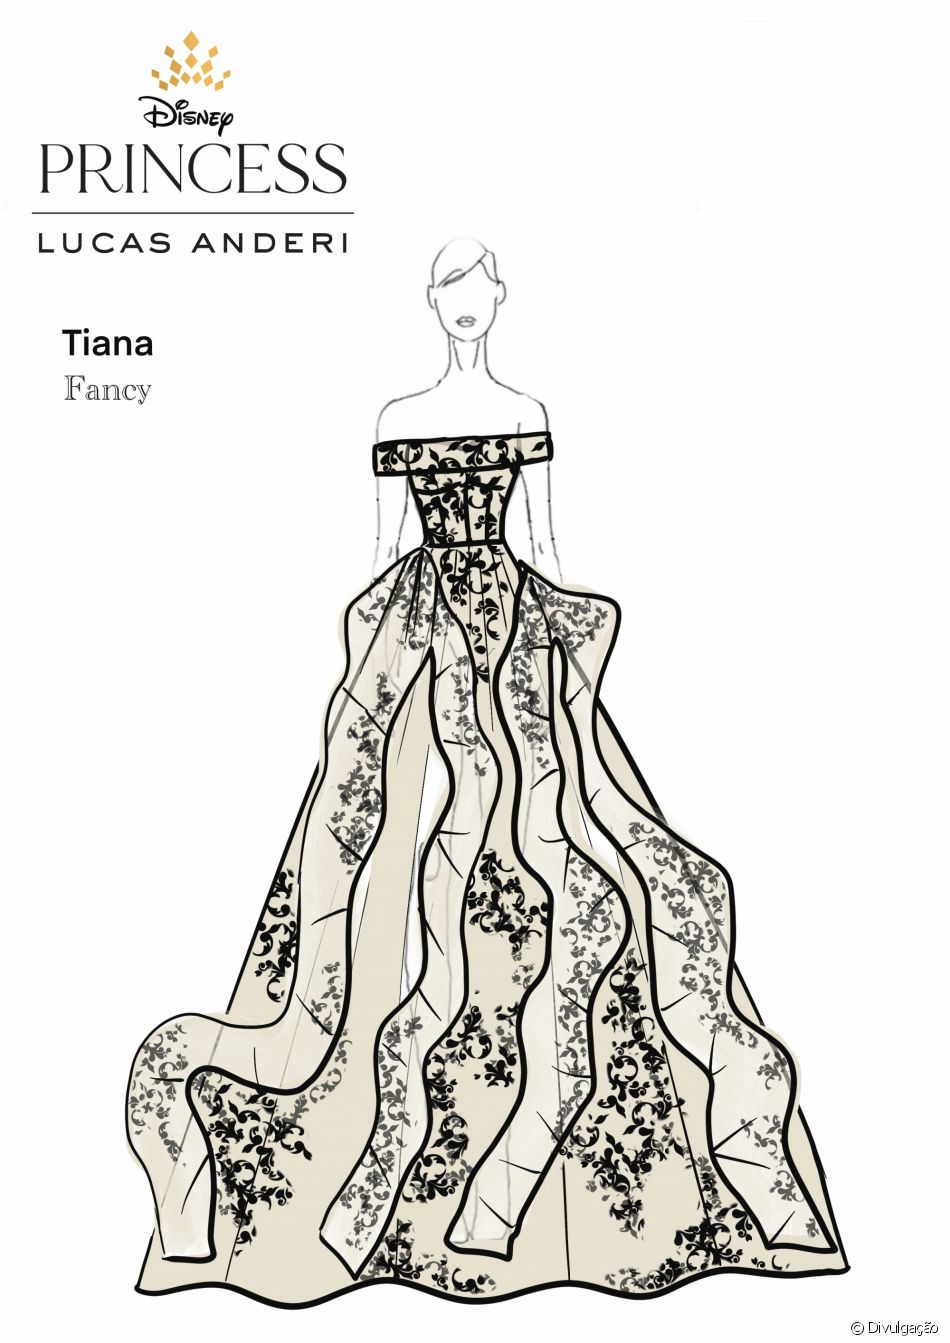 Princesa Tiana inspira vestido de noiva em versão fancy